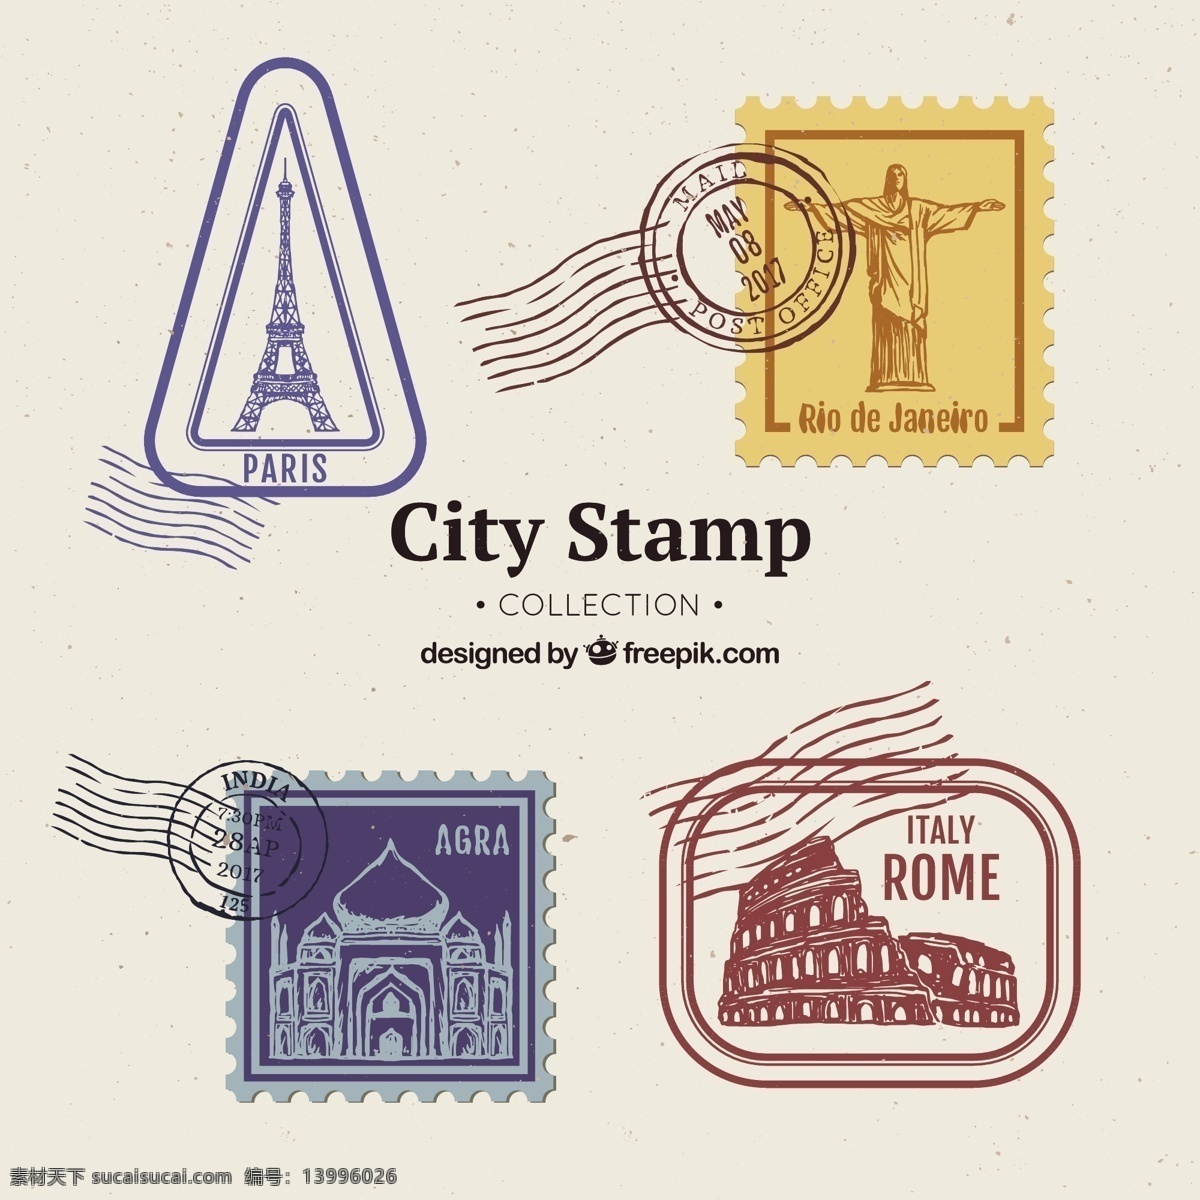 创意 城市 邮票 图标 矢量 城市邮票 矢量素材